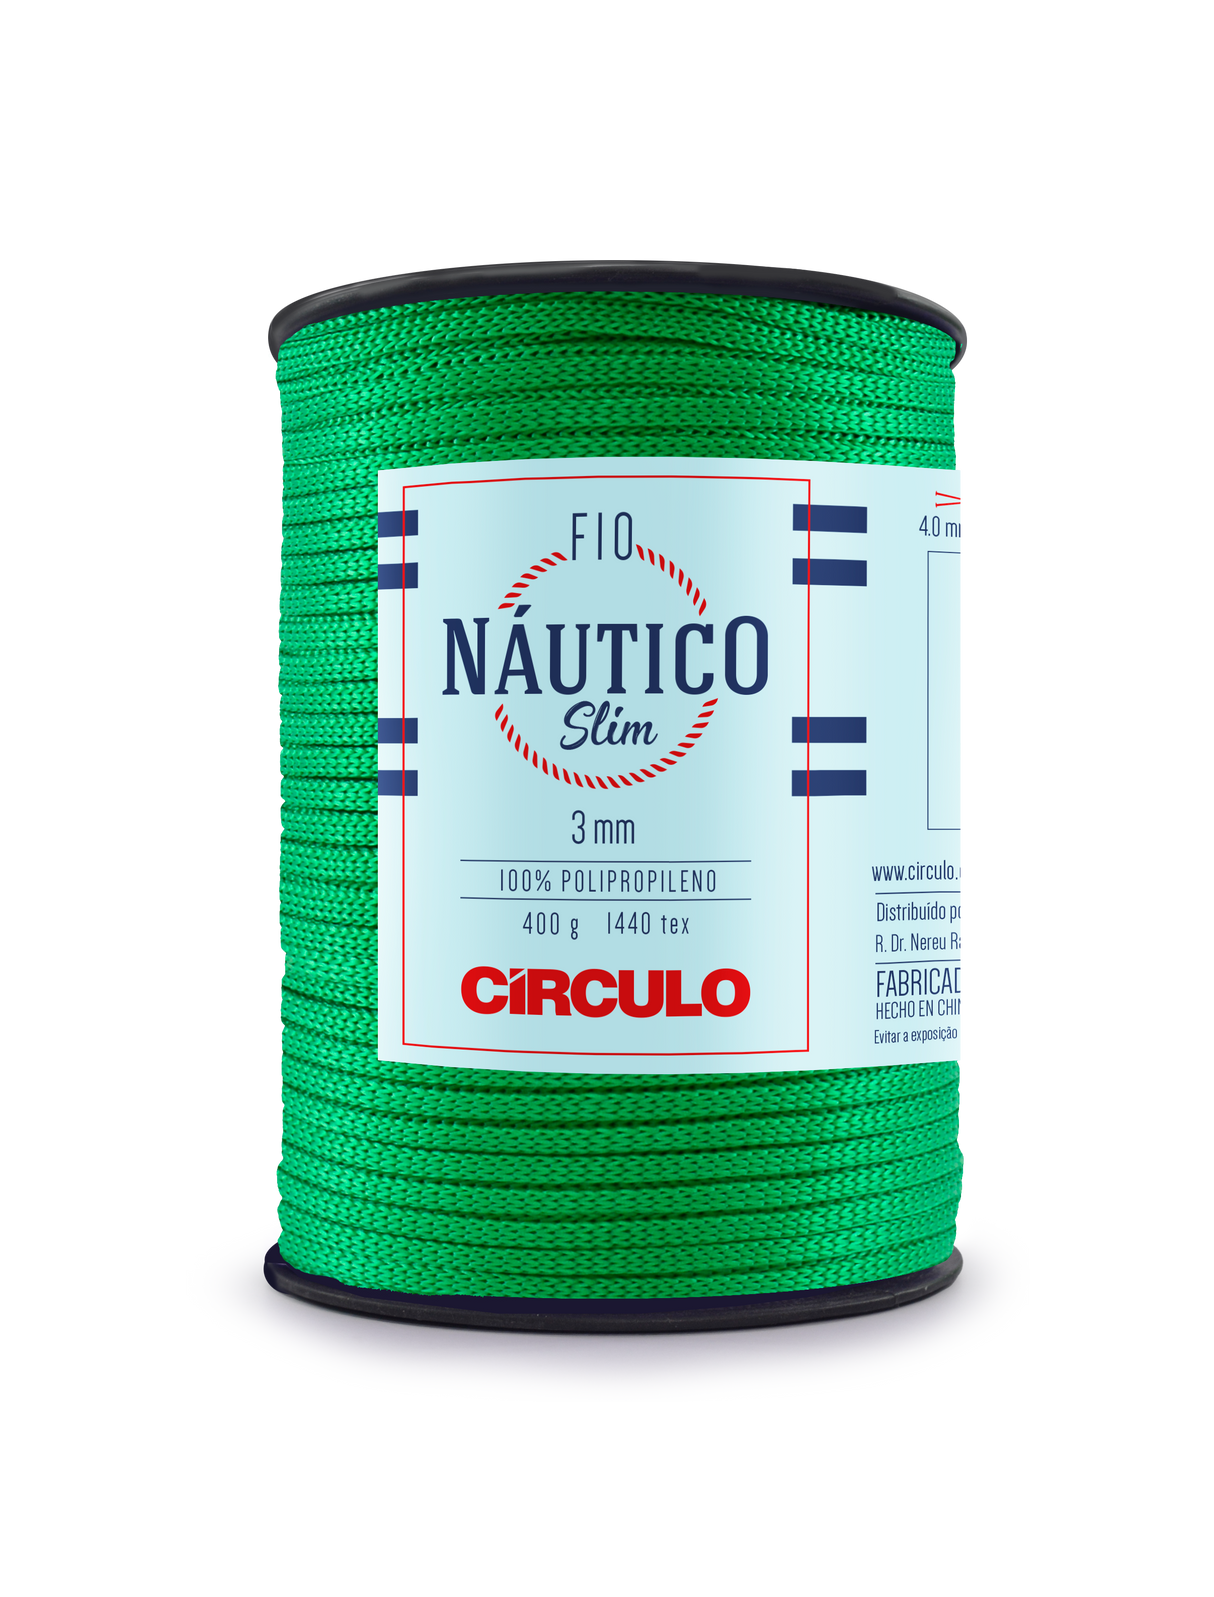 Circulo Fio Nautico Slim 3 mm color 5767